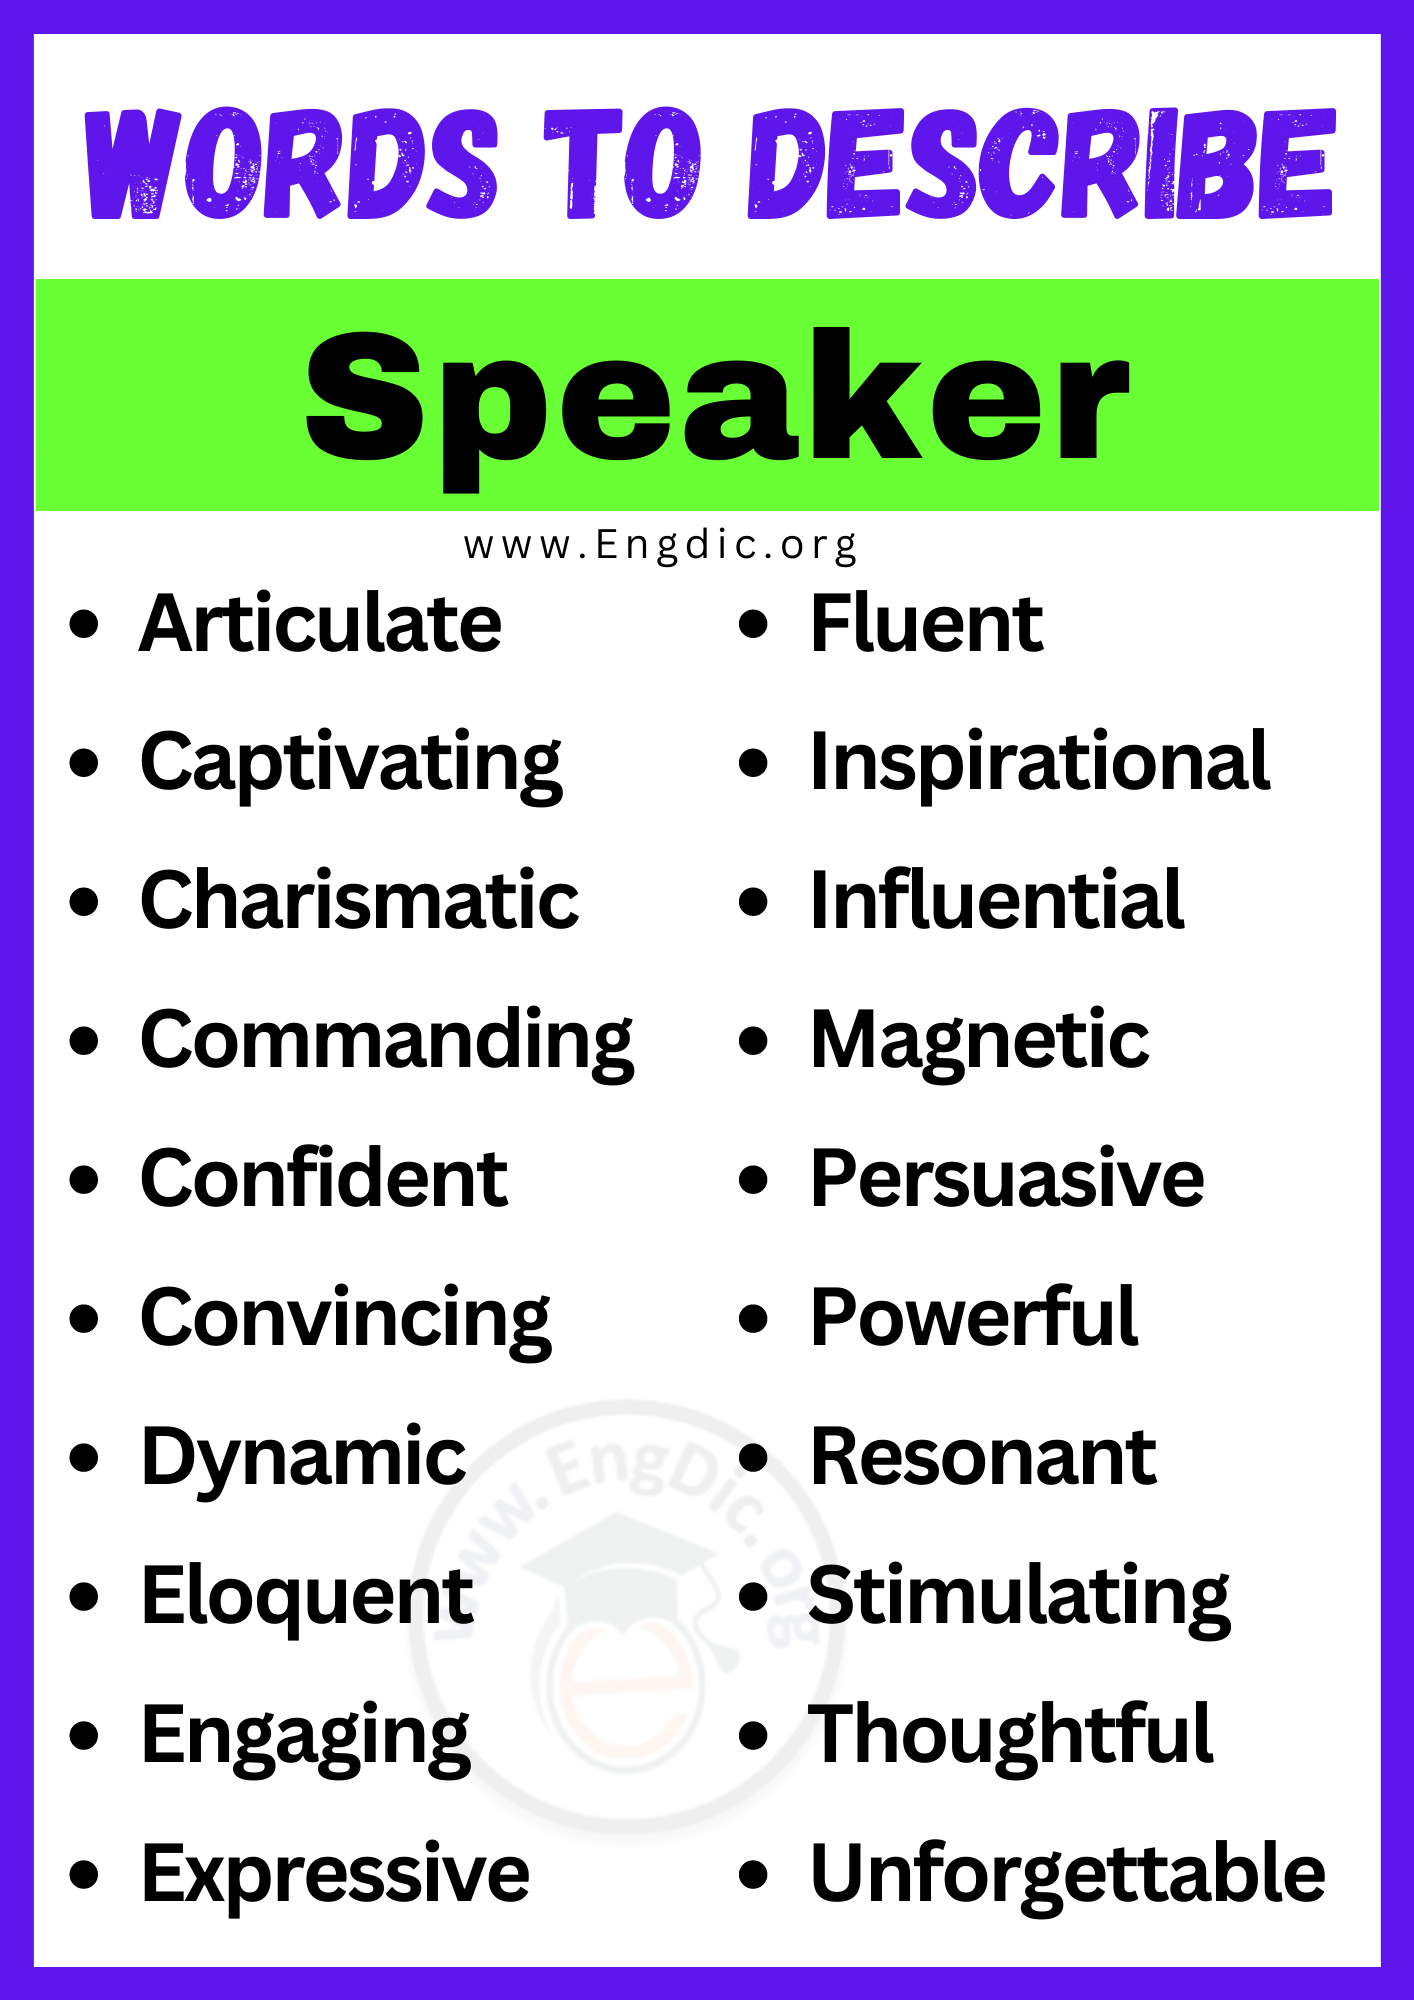 Words to Describe Speaker